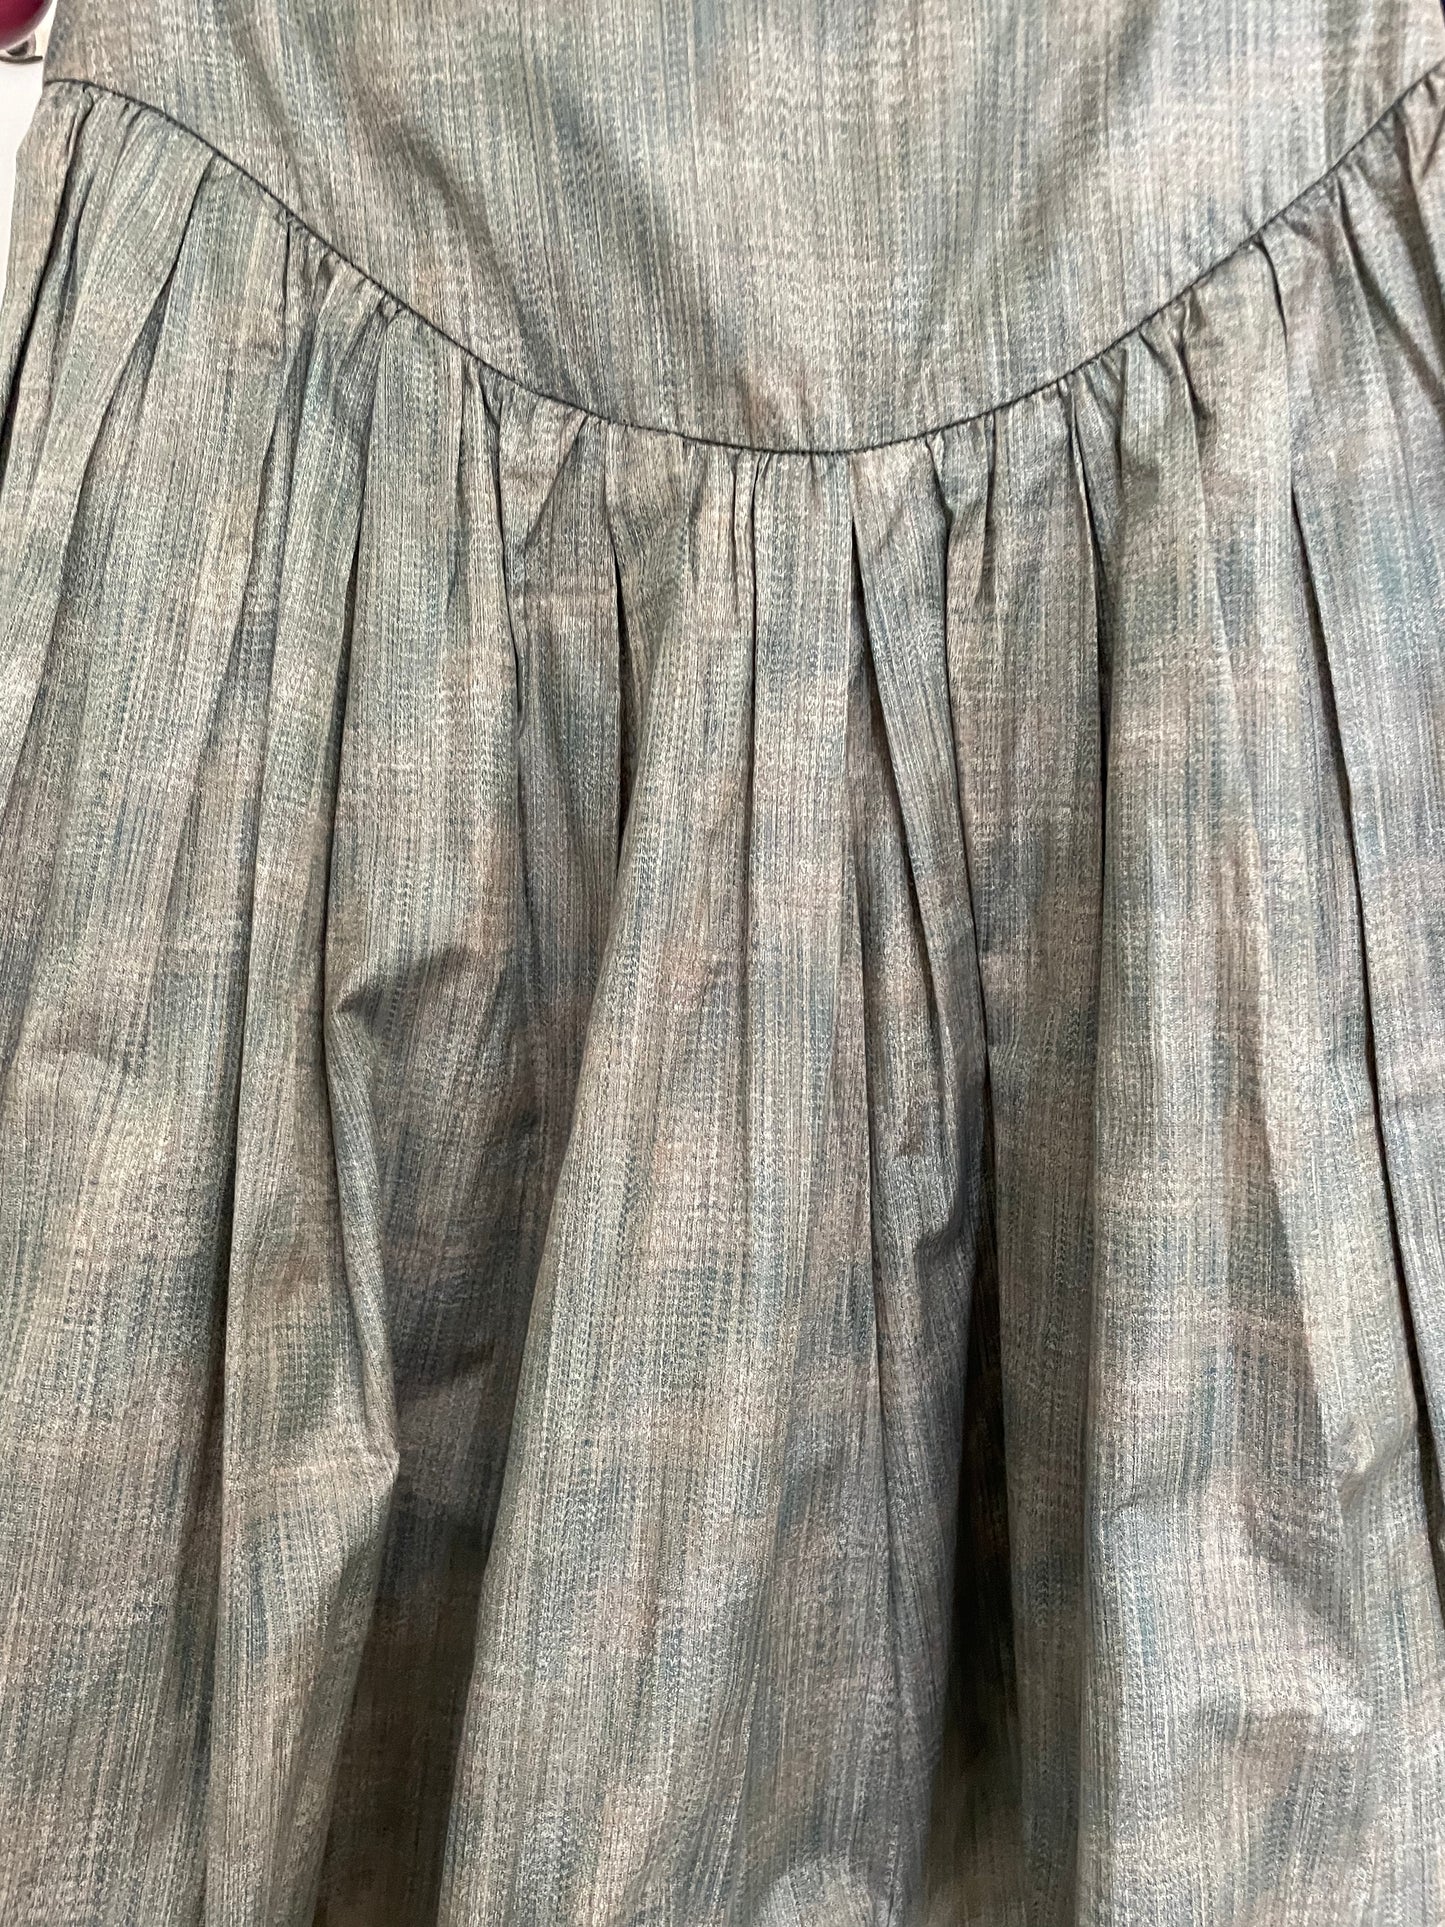 Giorgio Armani 80s khaki cotton short/skirt